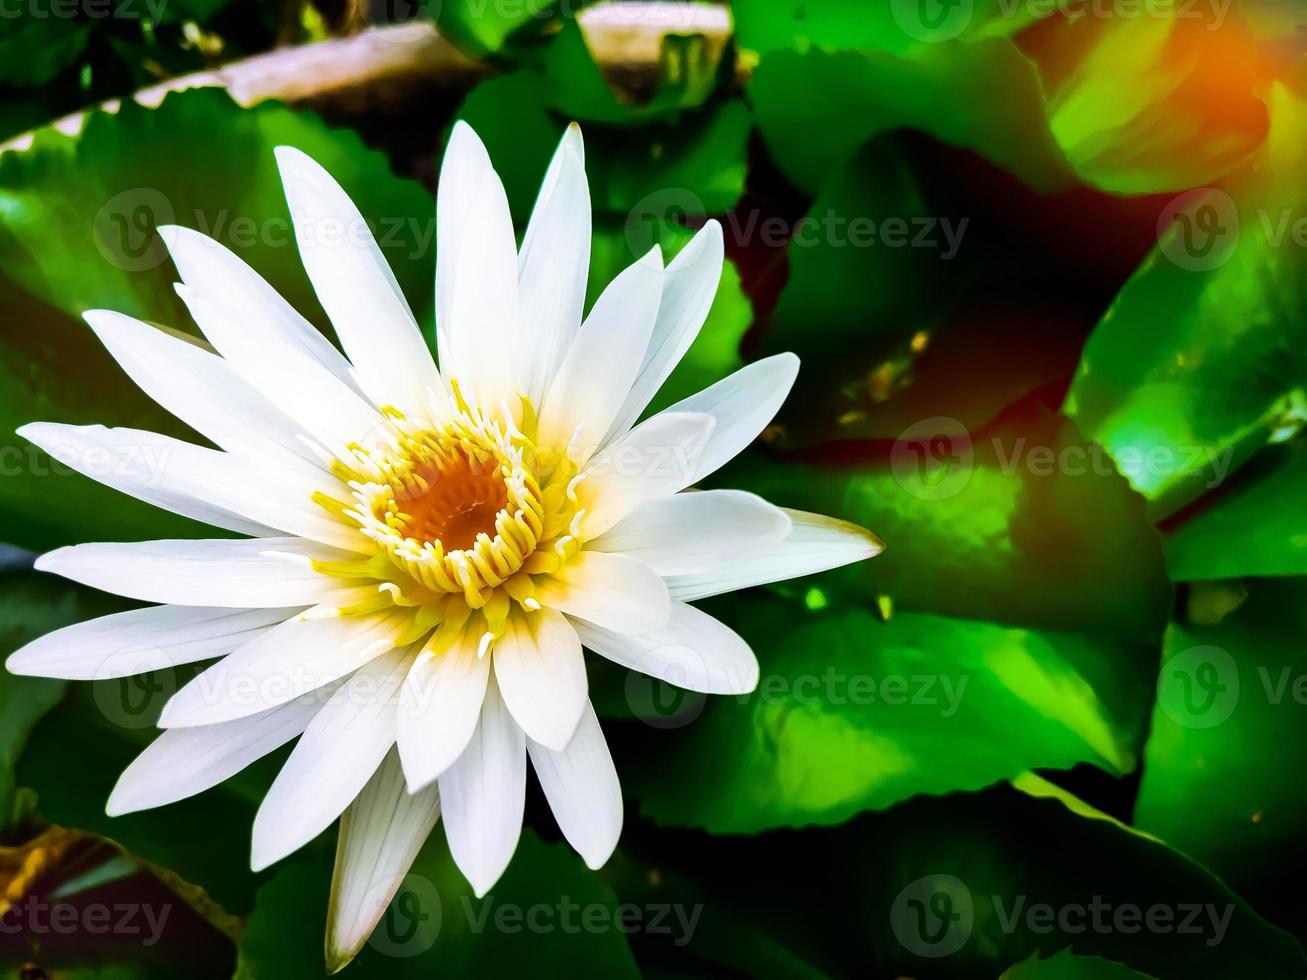 grande imagem de foco de lótus branco com diferença de fundo desfocado da natureza silhueta de flor branca de núcleo amarelo brilhante foto